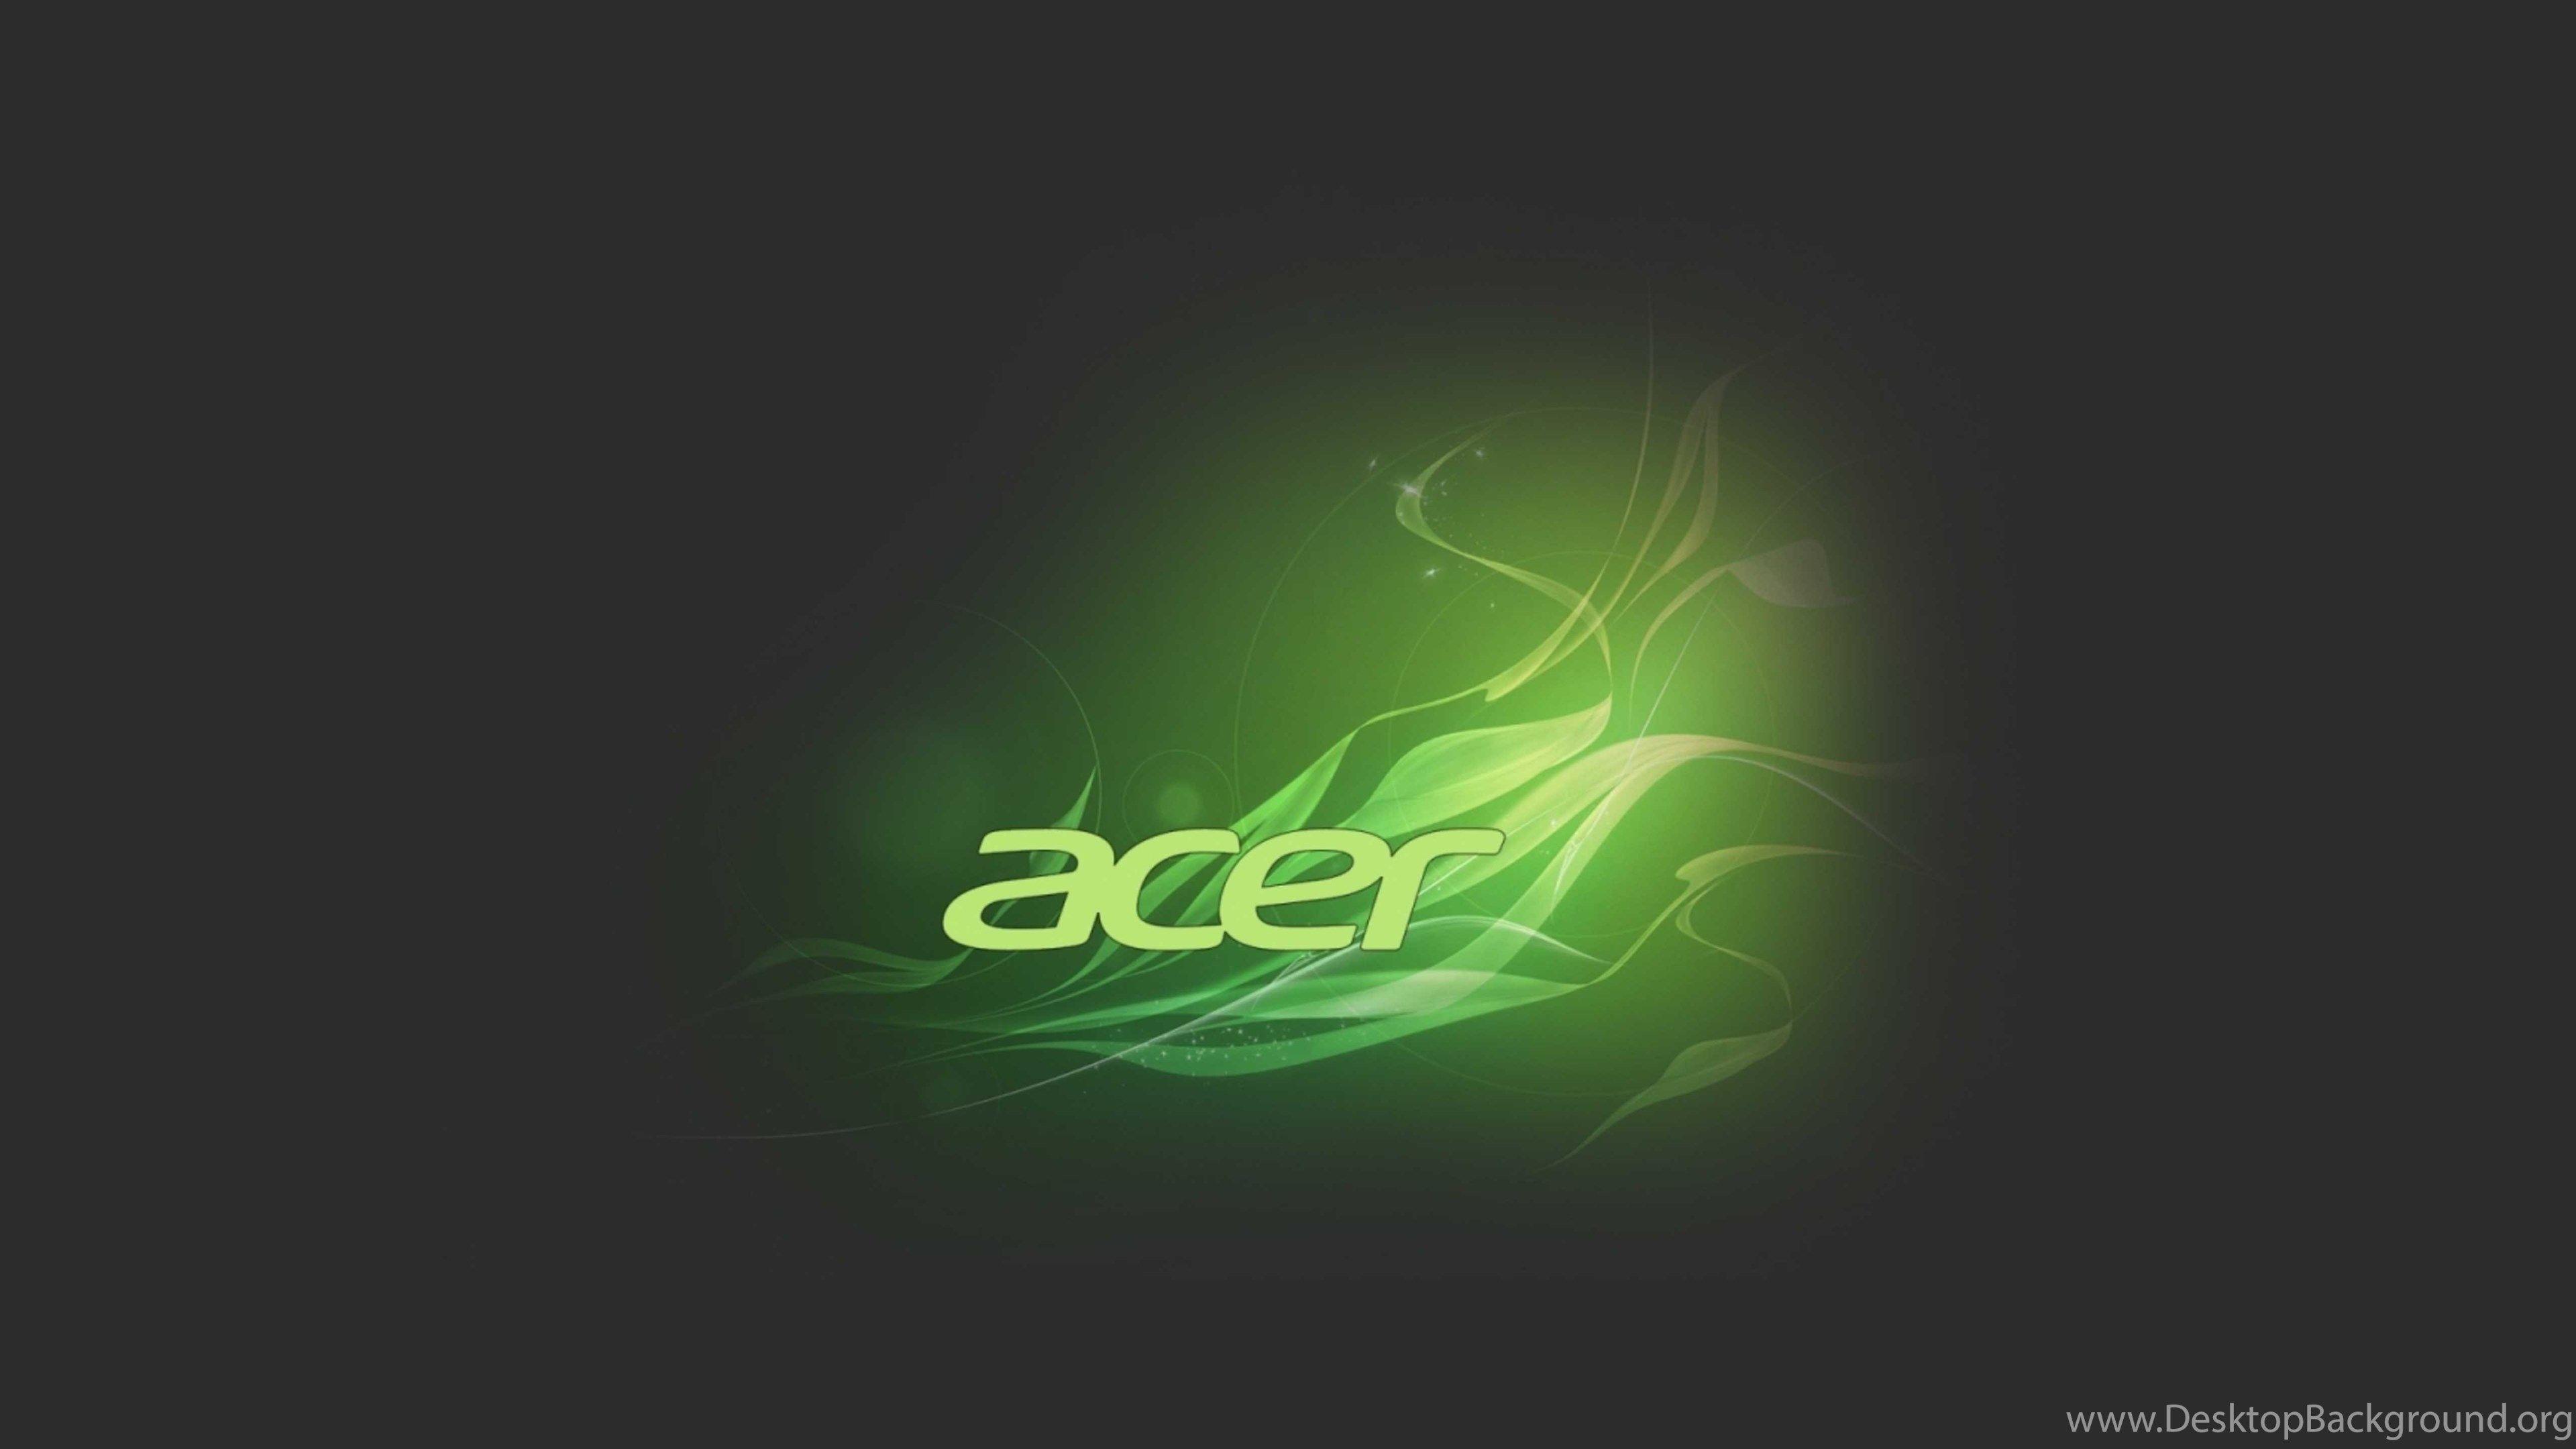 Green and black acer logo wallpaper Desktop Background